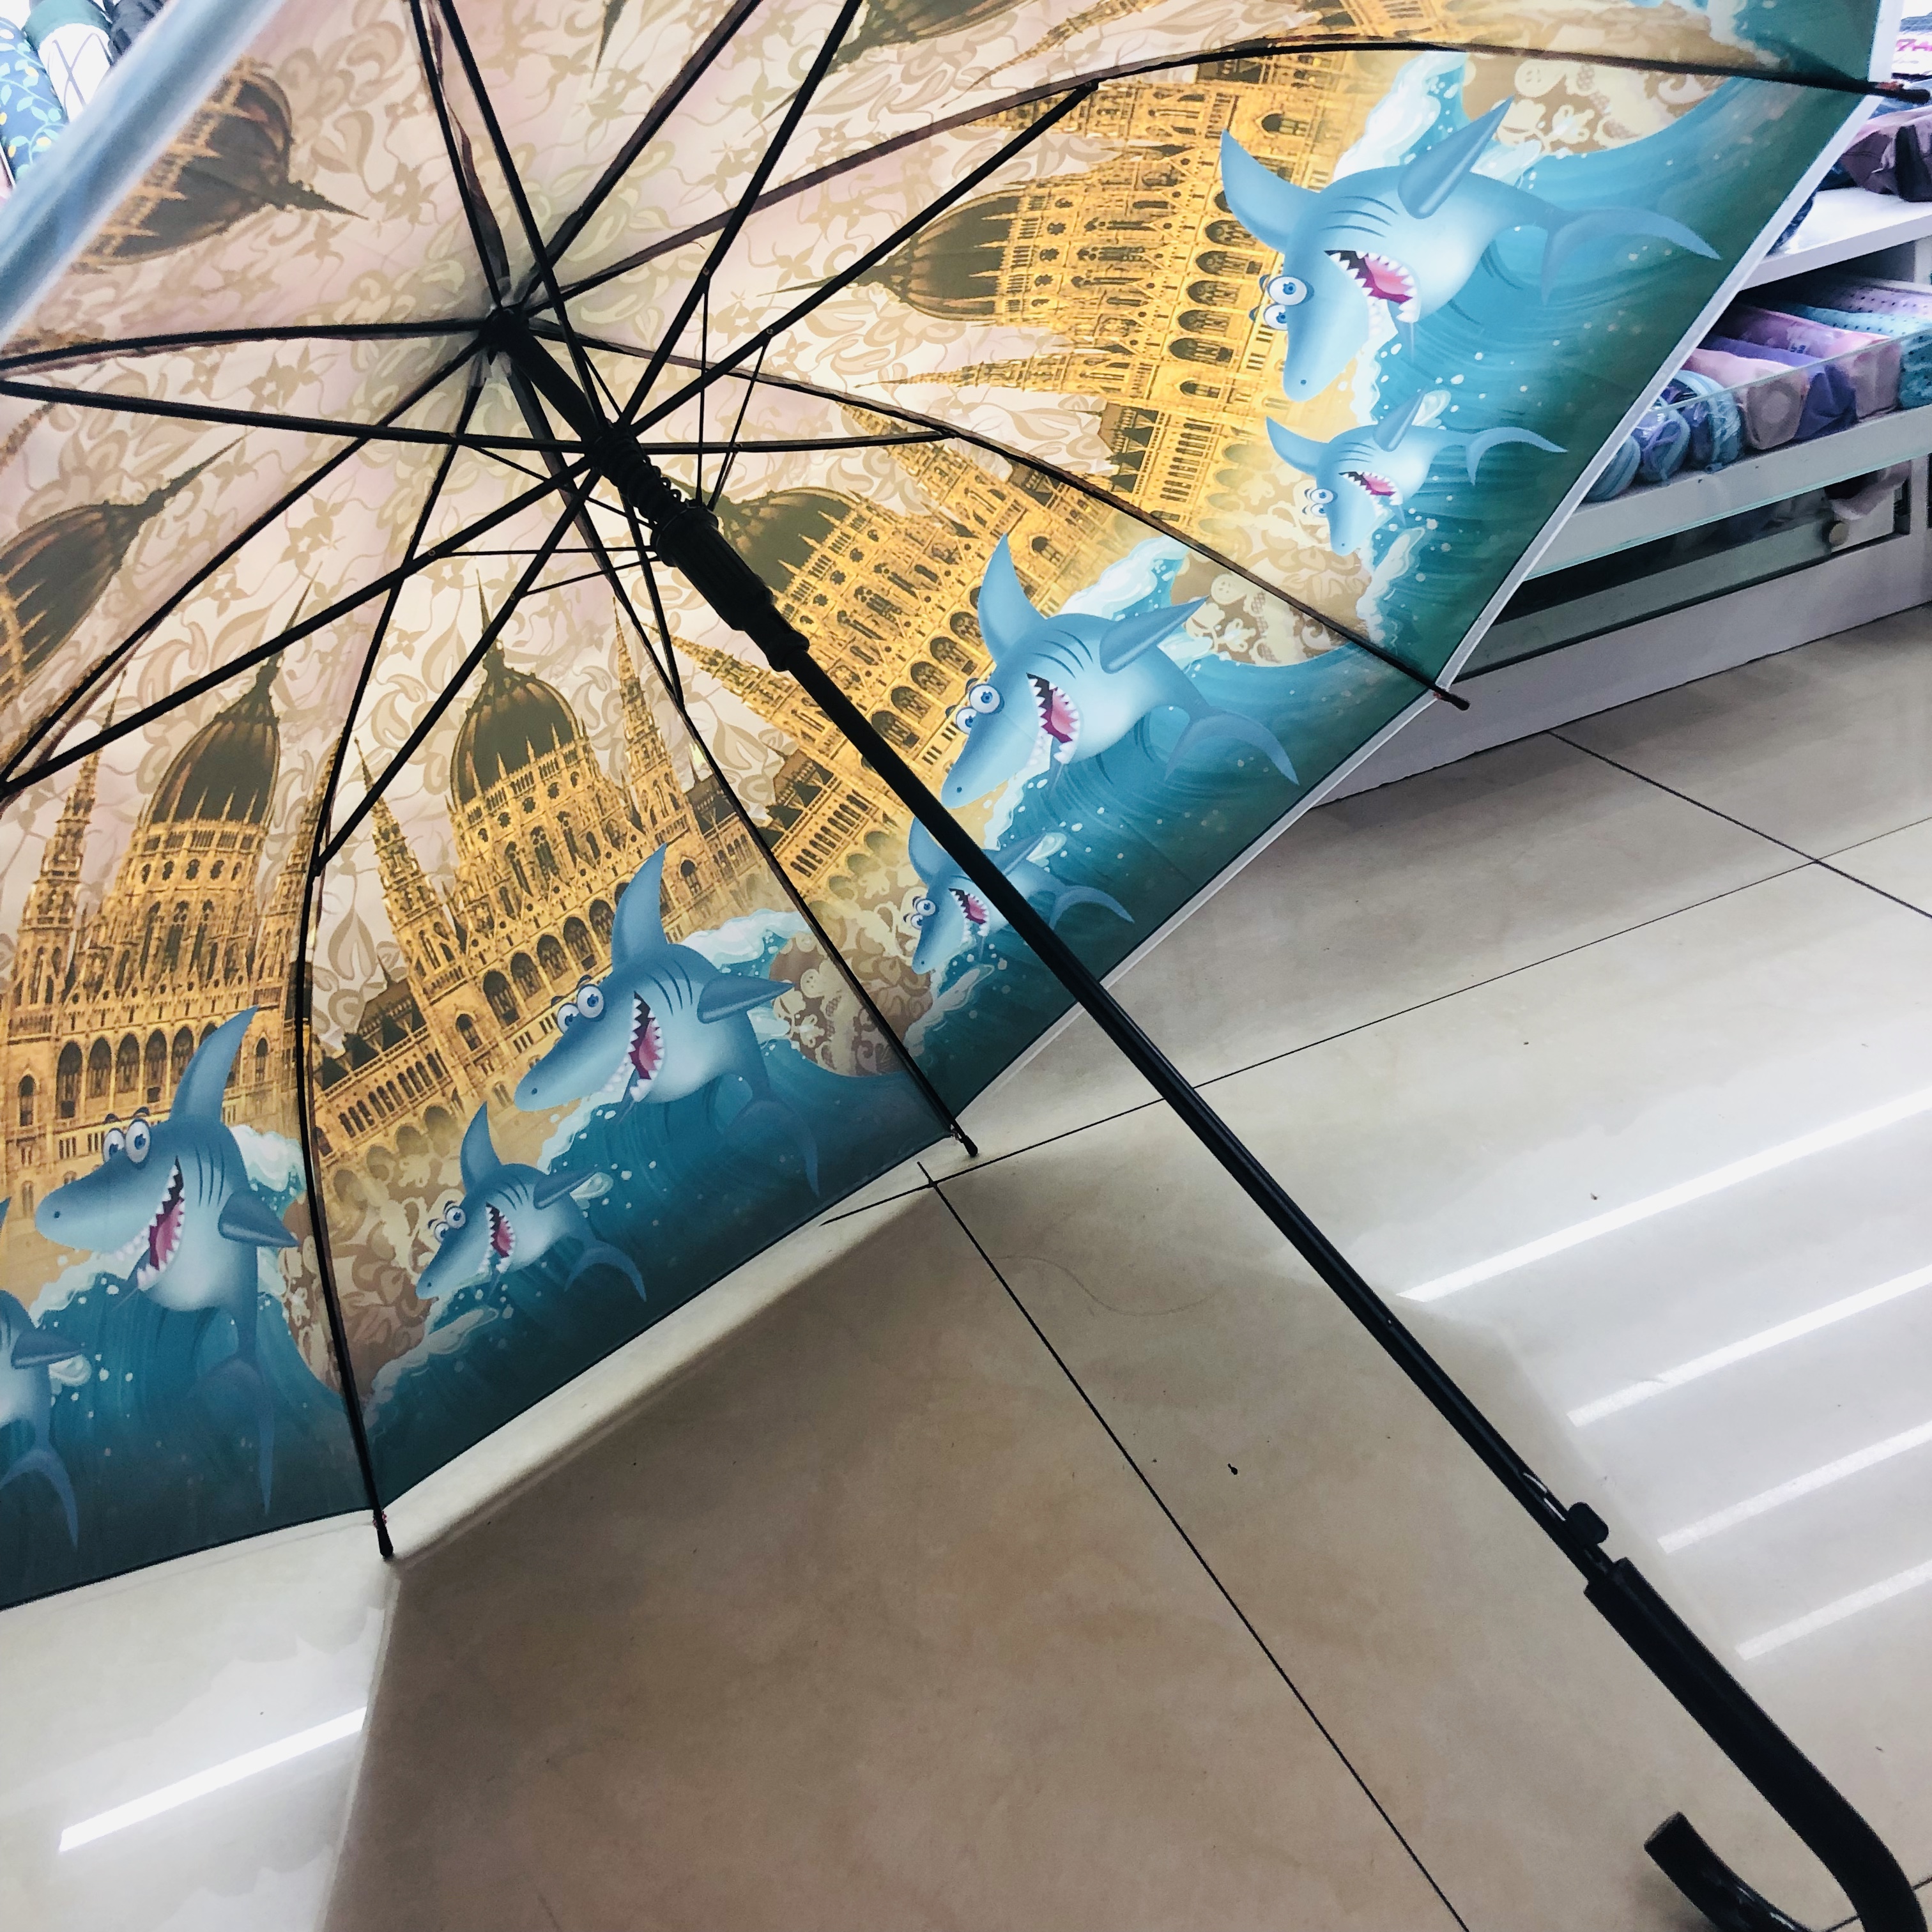 雨伞/太阳伞遮阳伞/太阳伞/折叠雨伞/雨伞太阳伞细节图